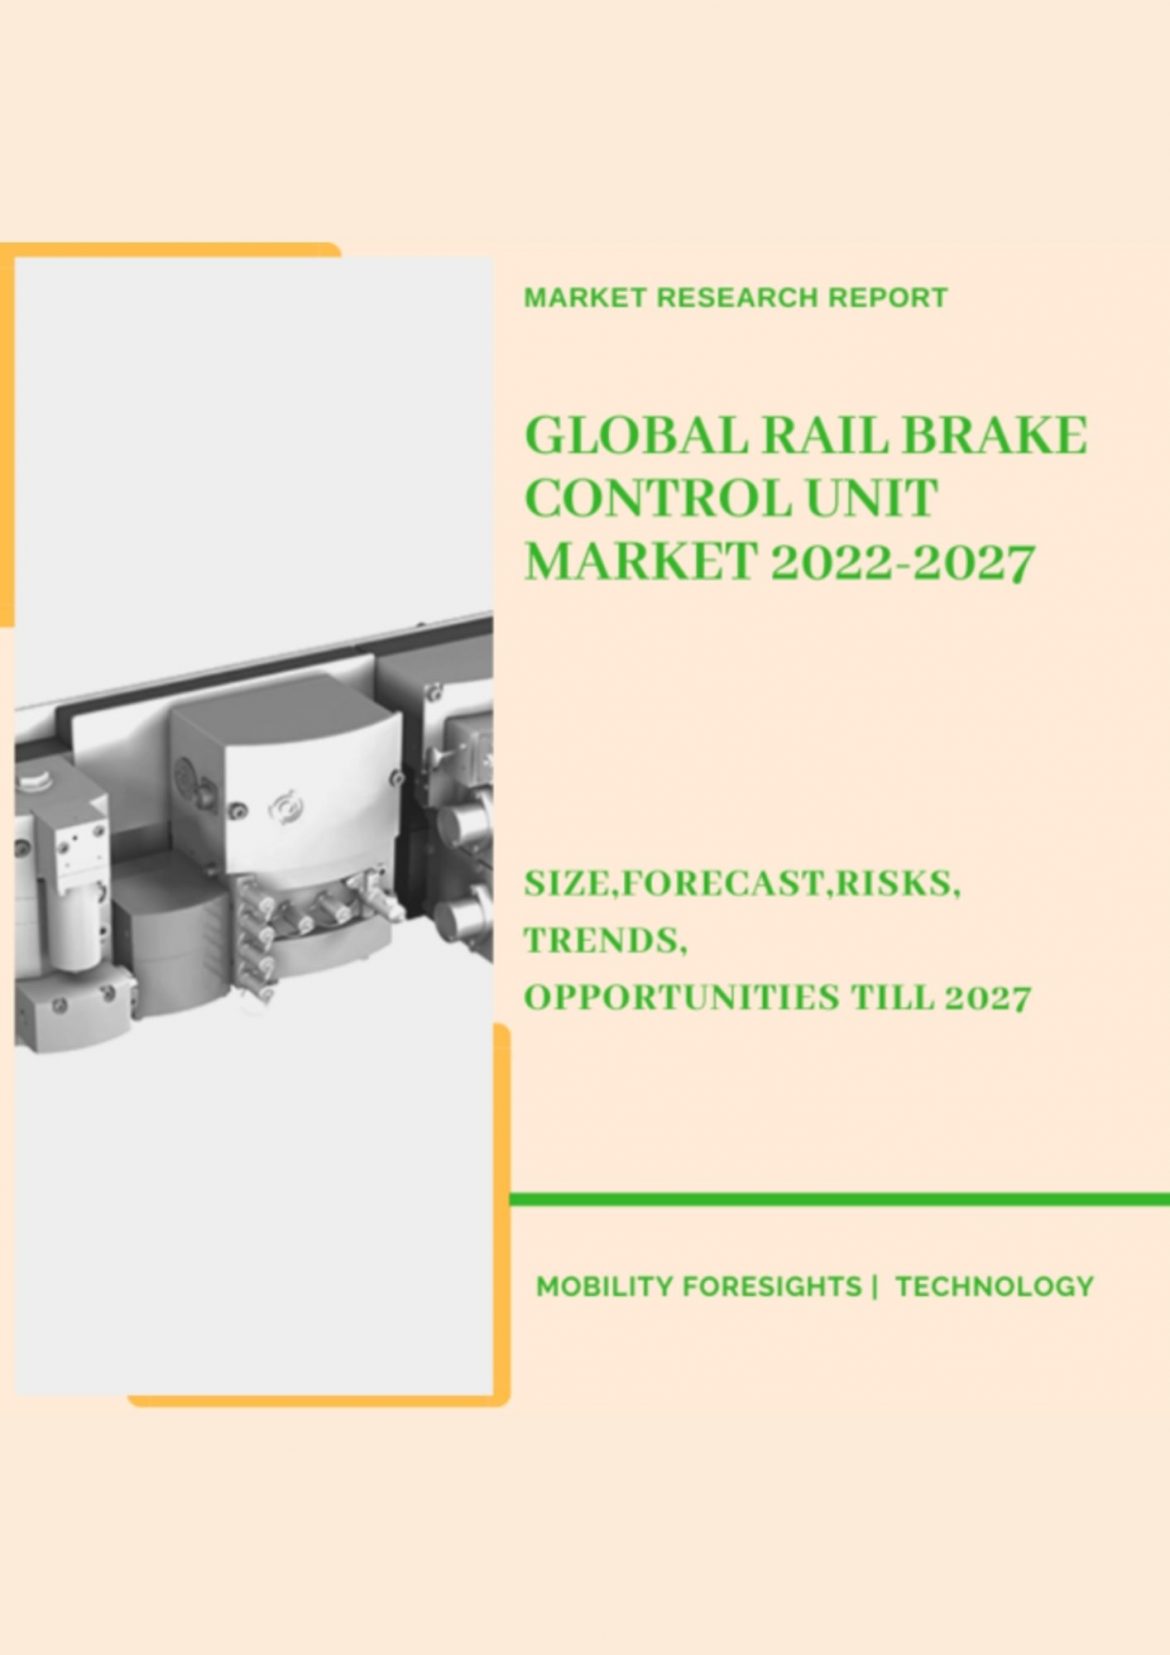 Global Rail Brake Control Unit Market 2022-2027